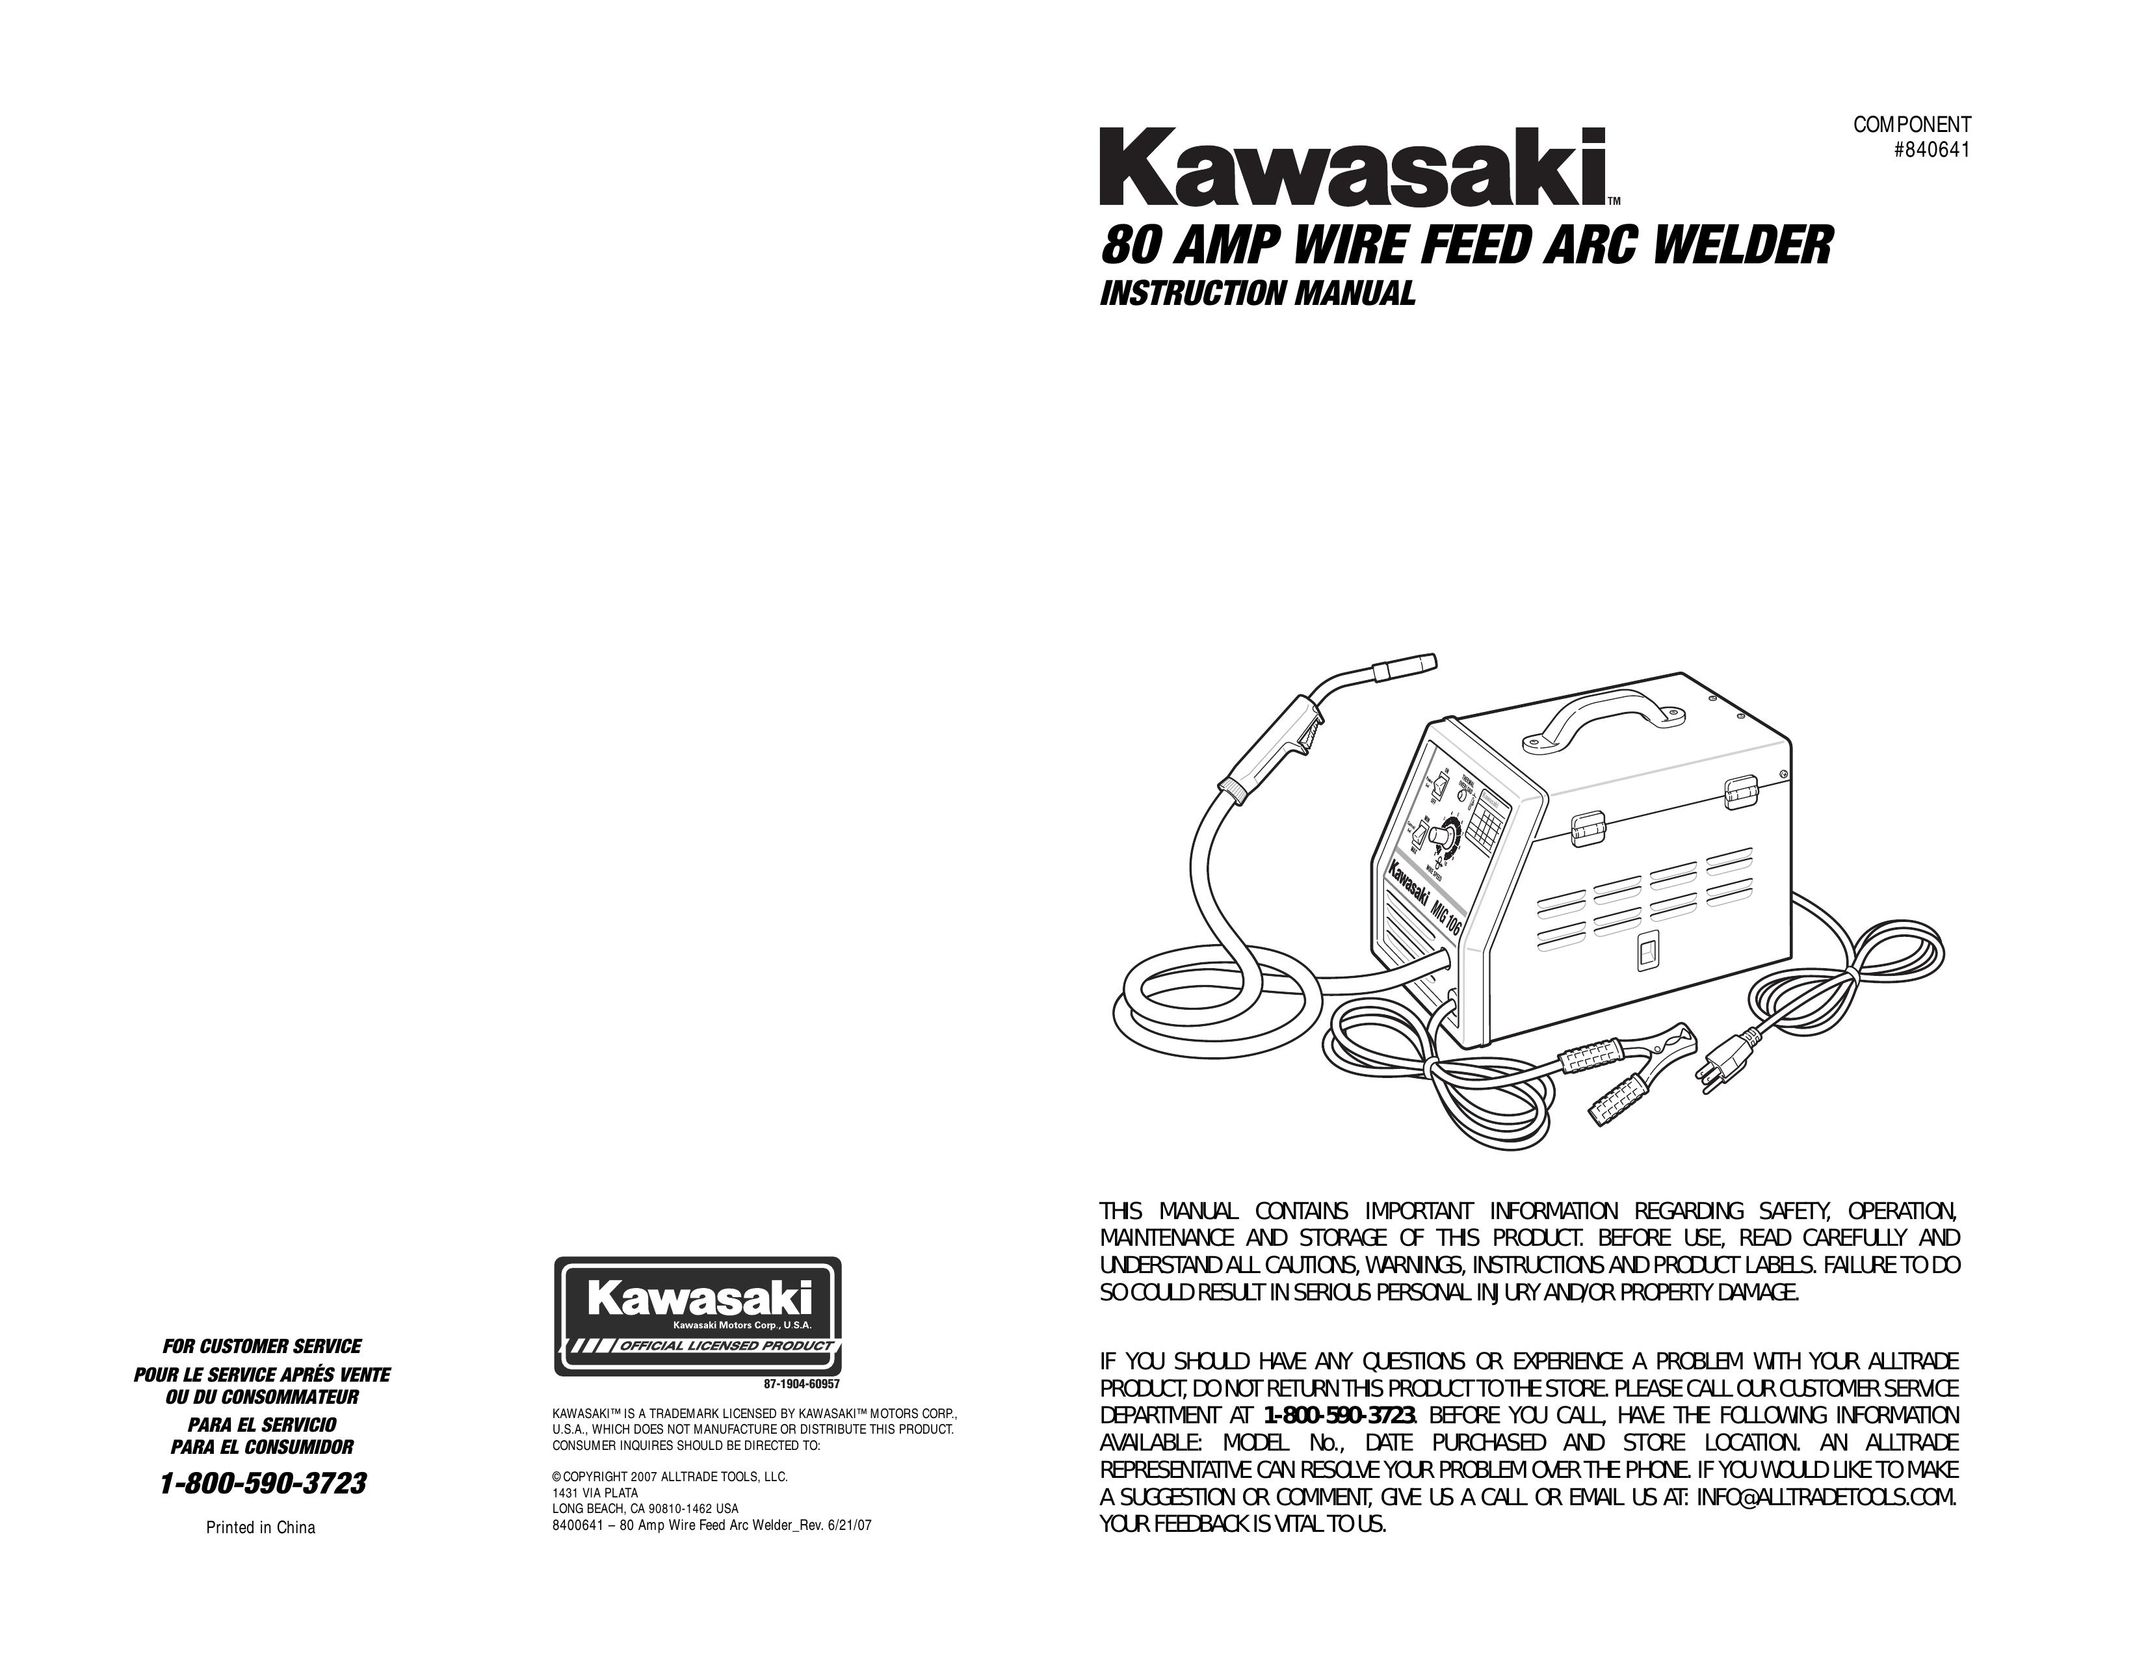 Kawasaki 840641 Welder User Manual